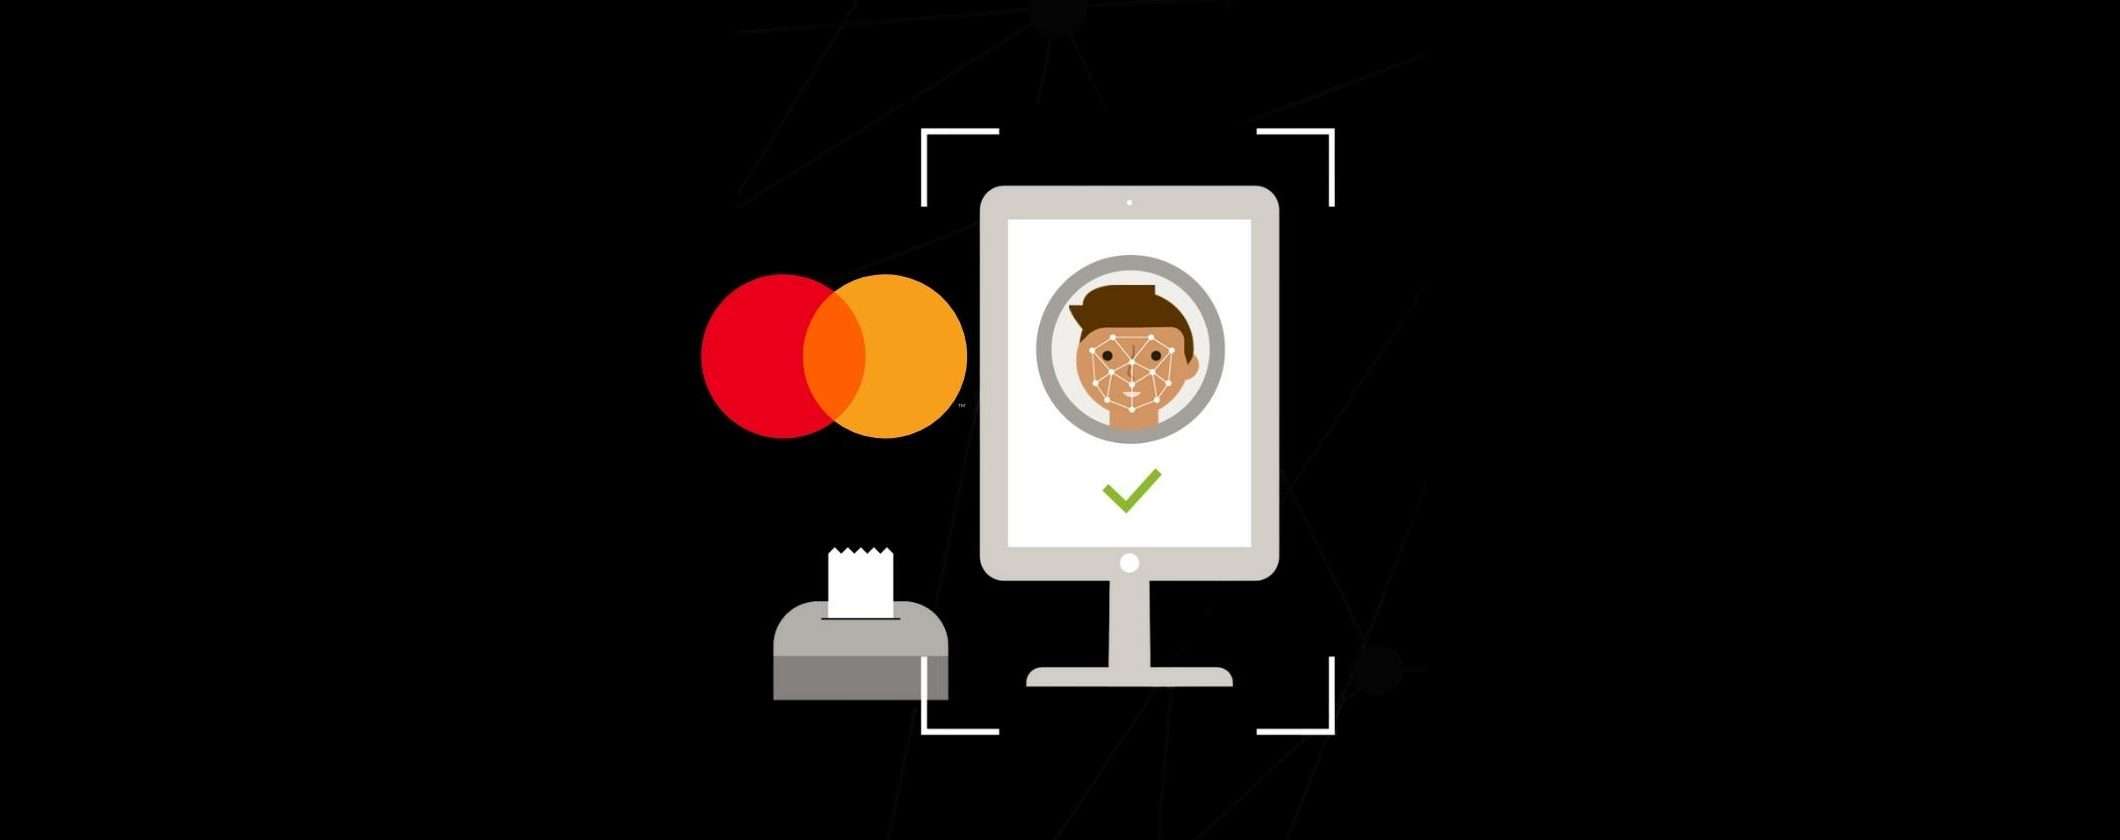 MasterCard ha lanciato un programma per metodi di pagamento biometrici